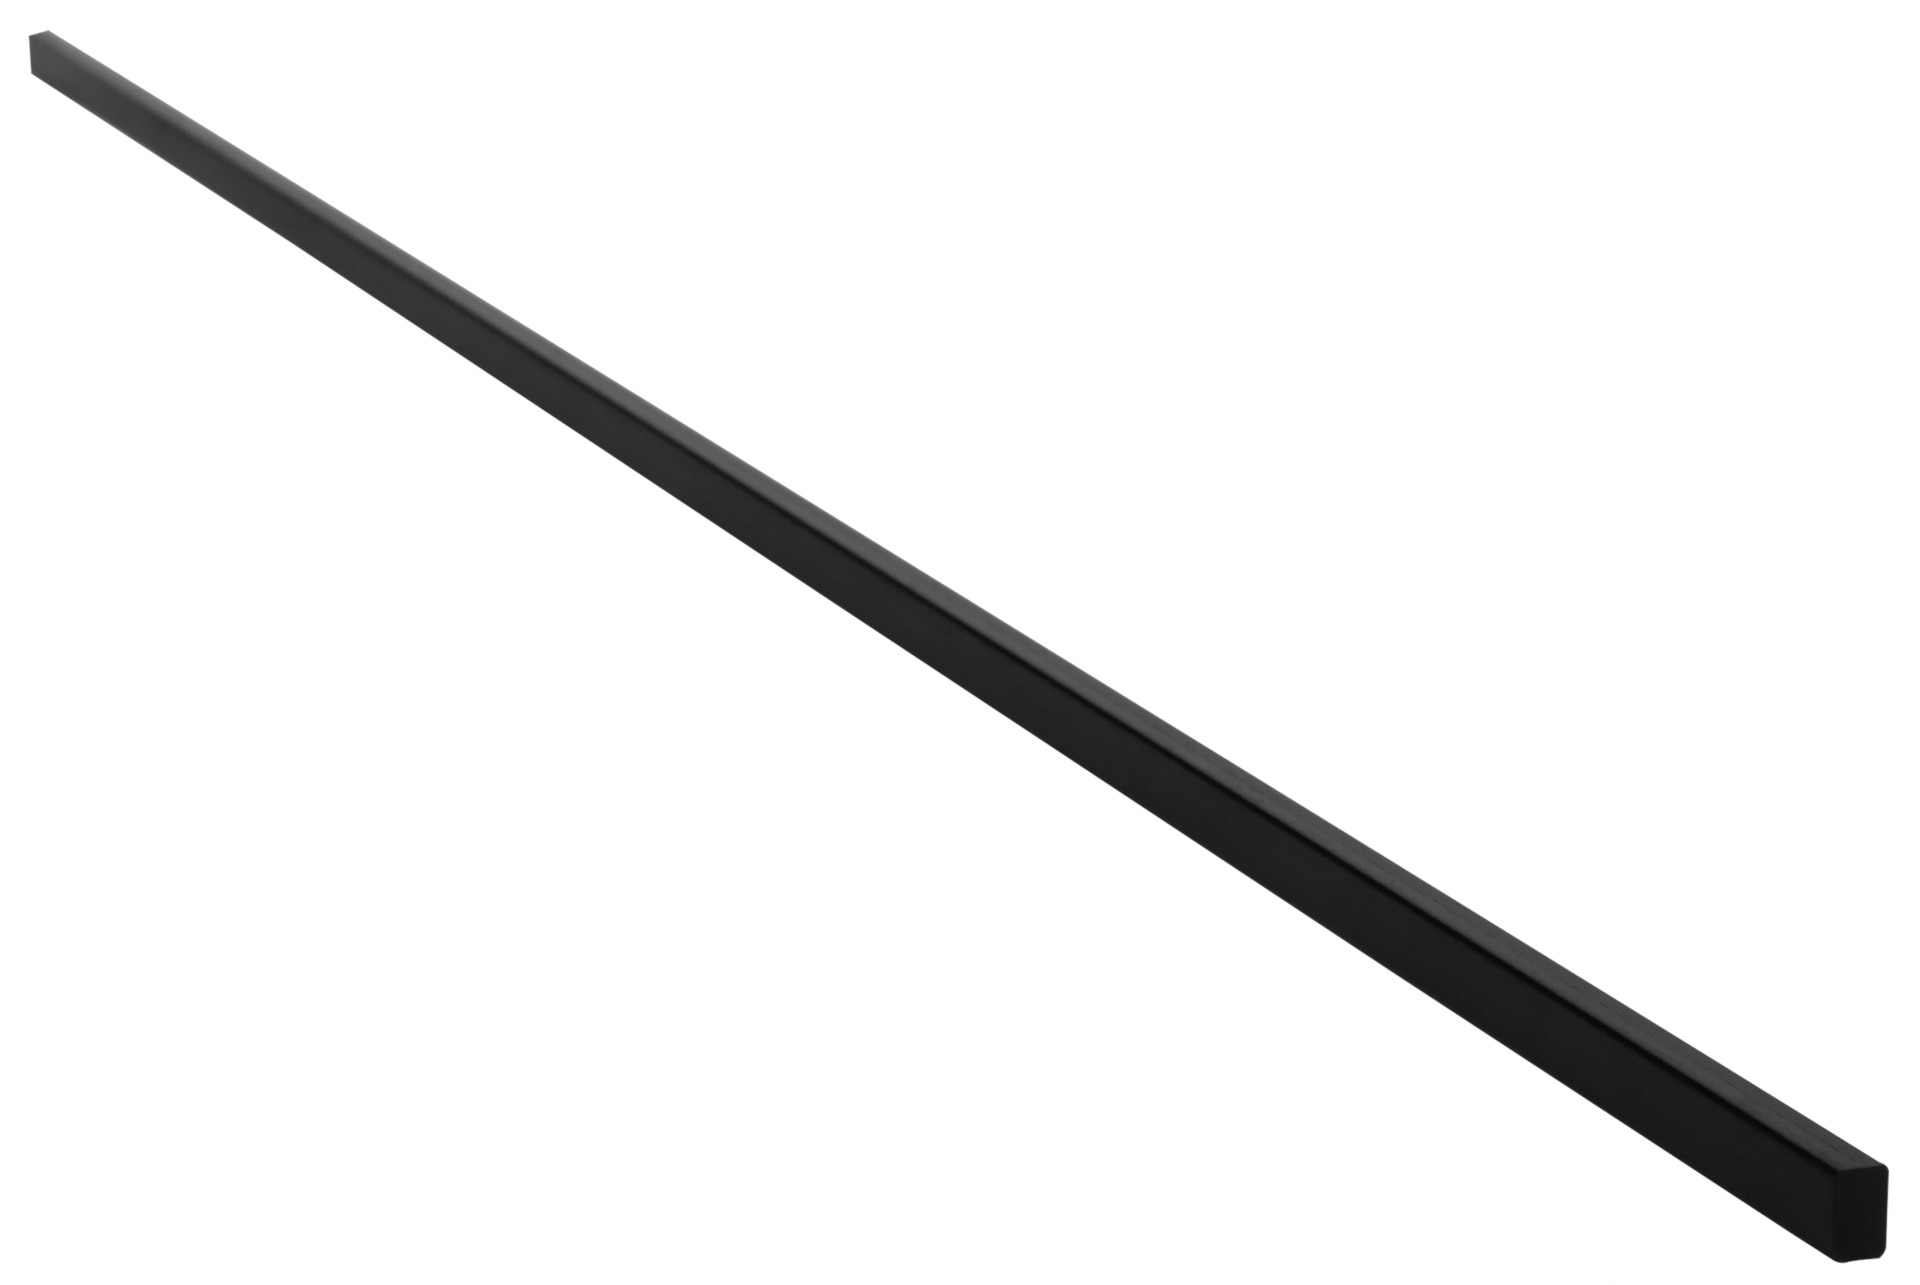 Sadowsky Parts - Carbon Fiber Reinforcement Rod - 568 x 7.5 x 4.5 mm (22.36" x 2.95" x 1.77")